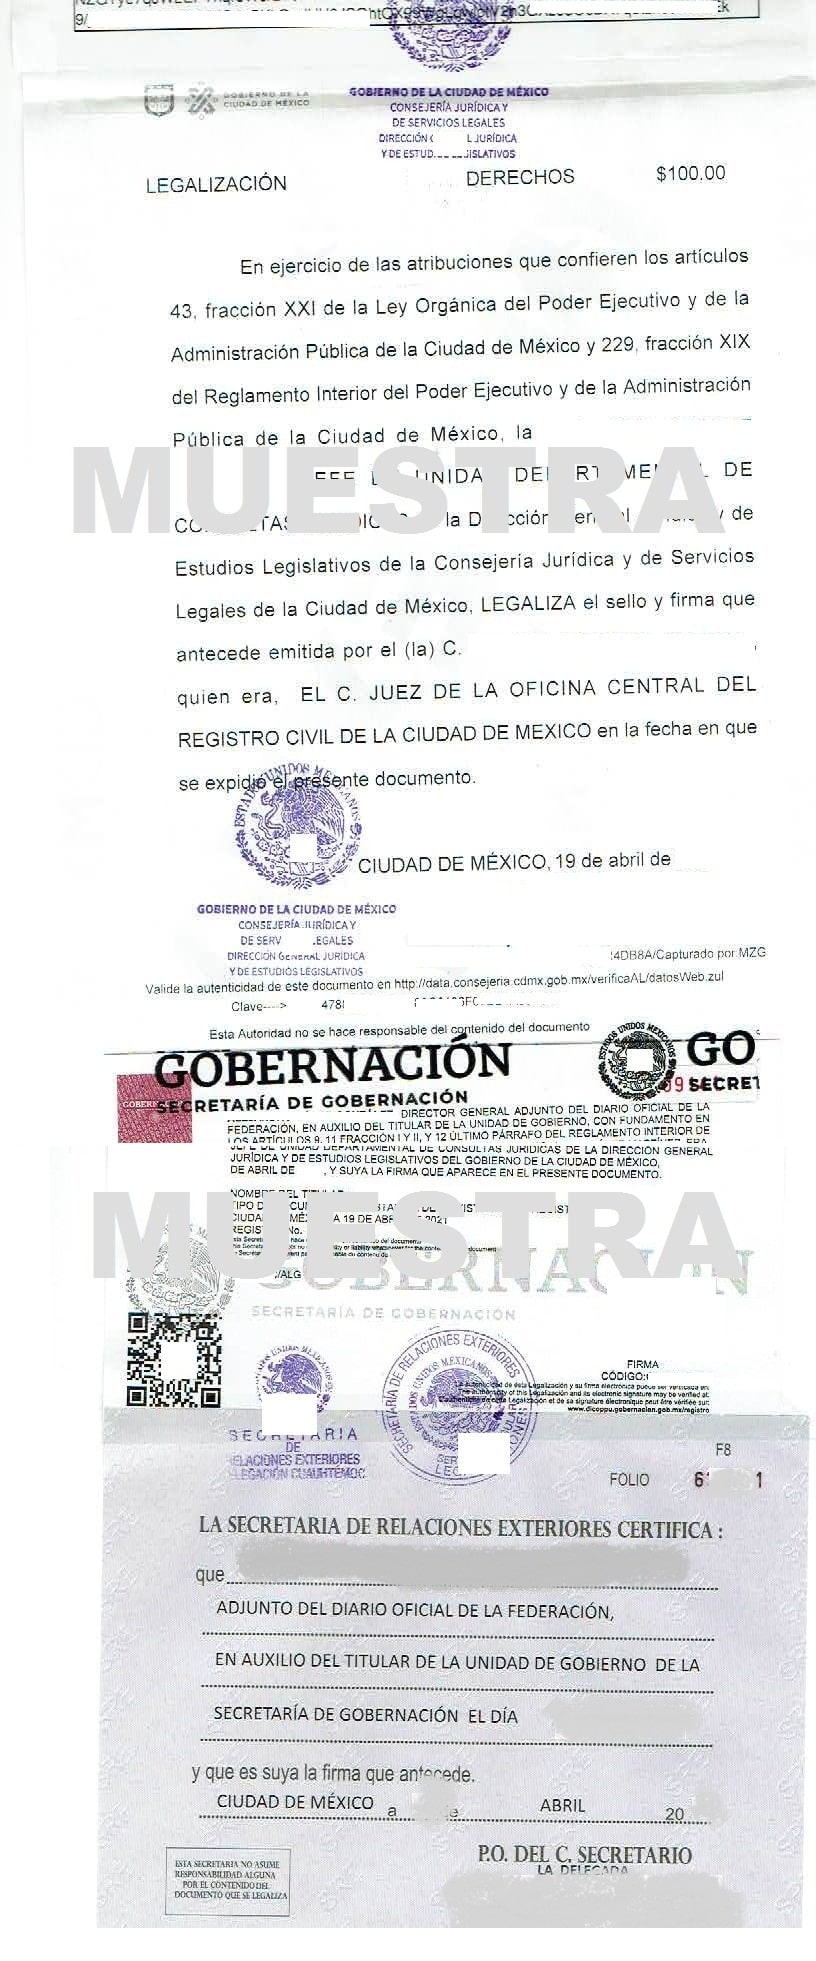 LEGALIZACIÓN DE ACTAS PARA CUBA LEGALIZACIÓN DE CONSTANCIA DE SOLTERÍA PARA CUBA LEGALIZACIÓN DE ACTA DE NACIMIENTO CDMX PARA CUBA LEGALIZACIÓN DE ACTAS DEL REGISTRO CIVIL CDMX PARA CUBA